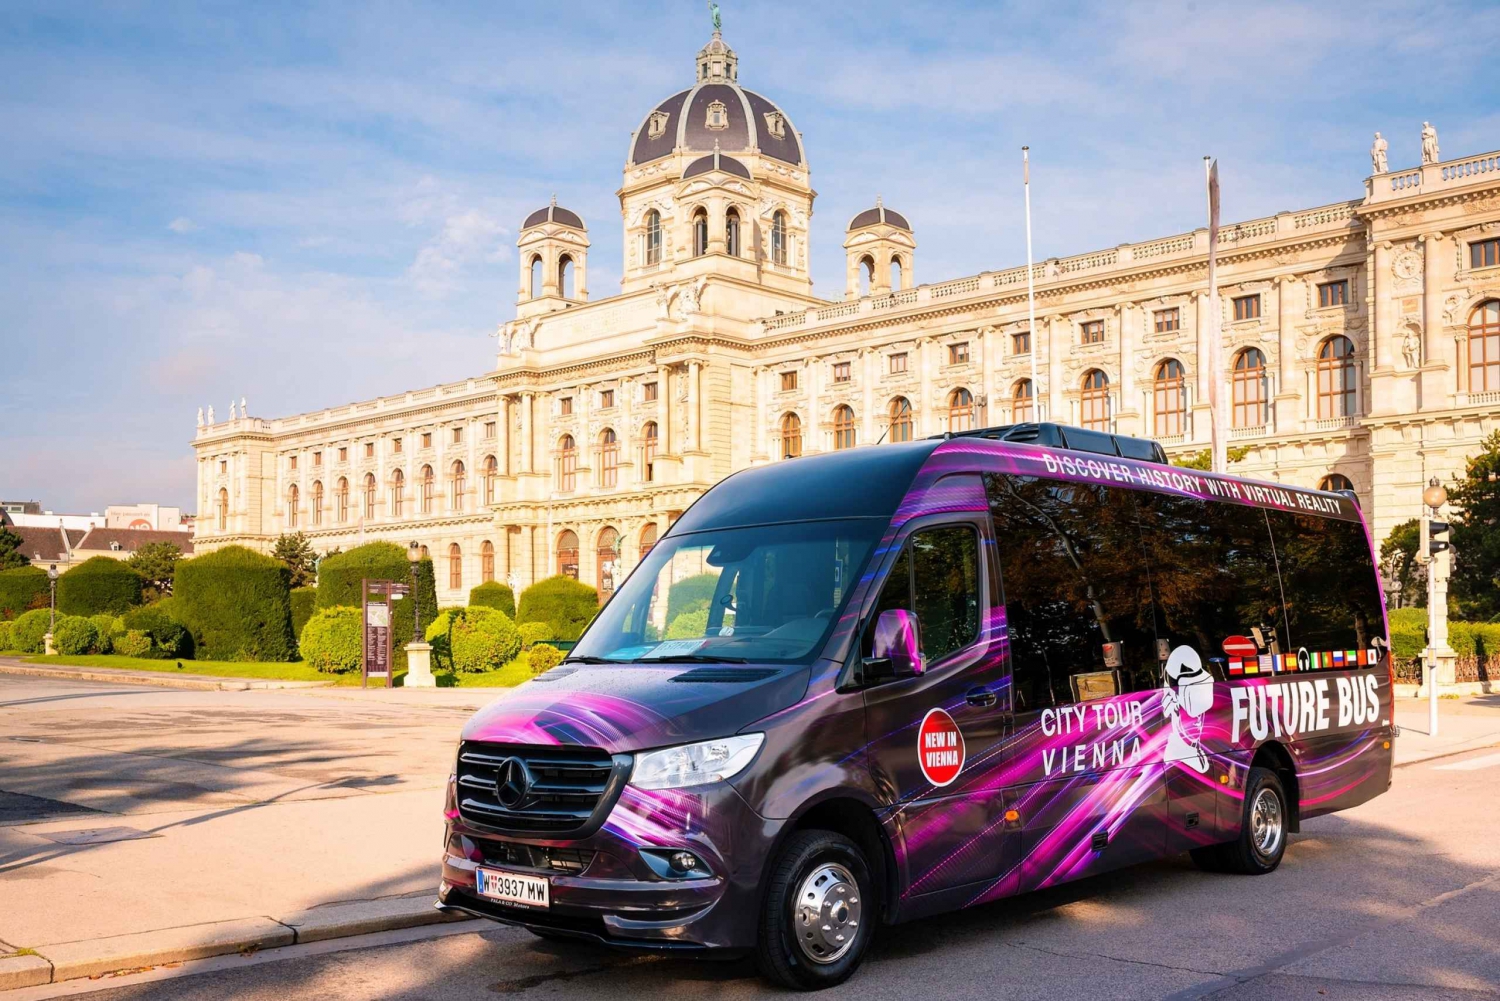 Viena: Visita en autobús con experiencia de realidad virtual